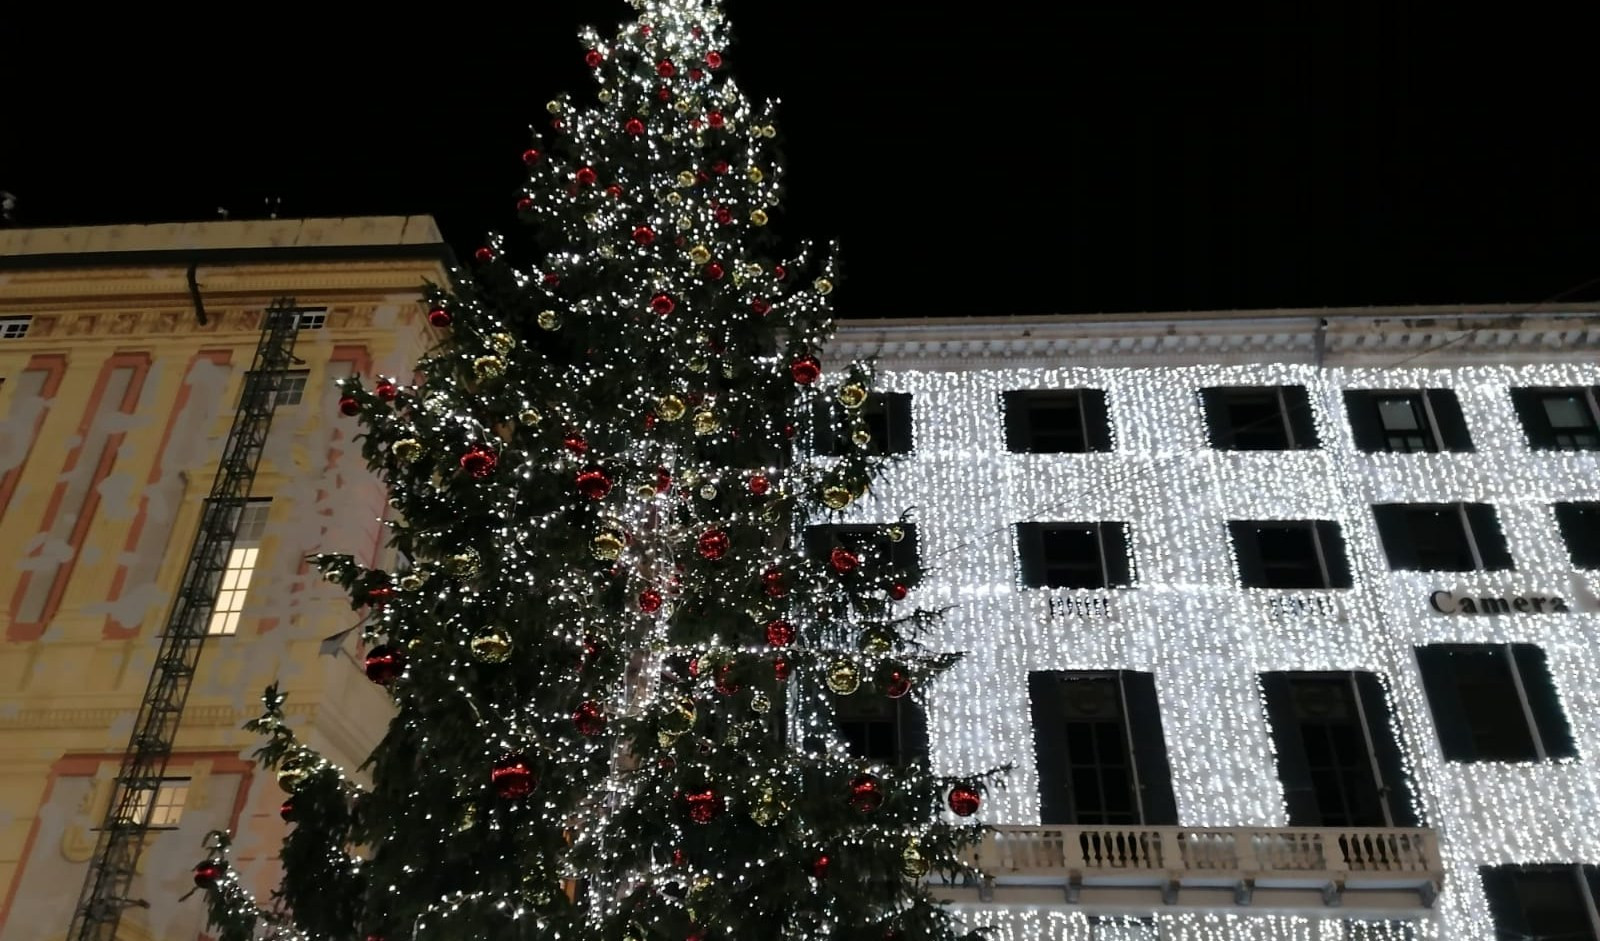 Il Natale arriva a Genova: si illumina piazza De Ferrari e l'albero 'foresto'